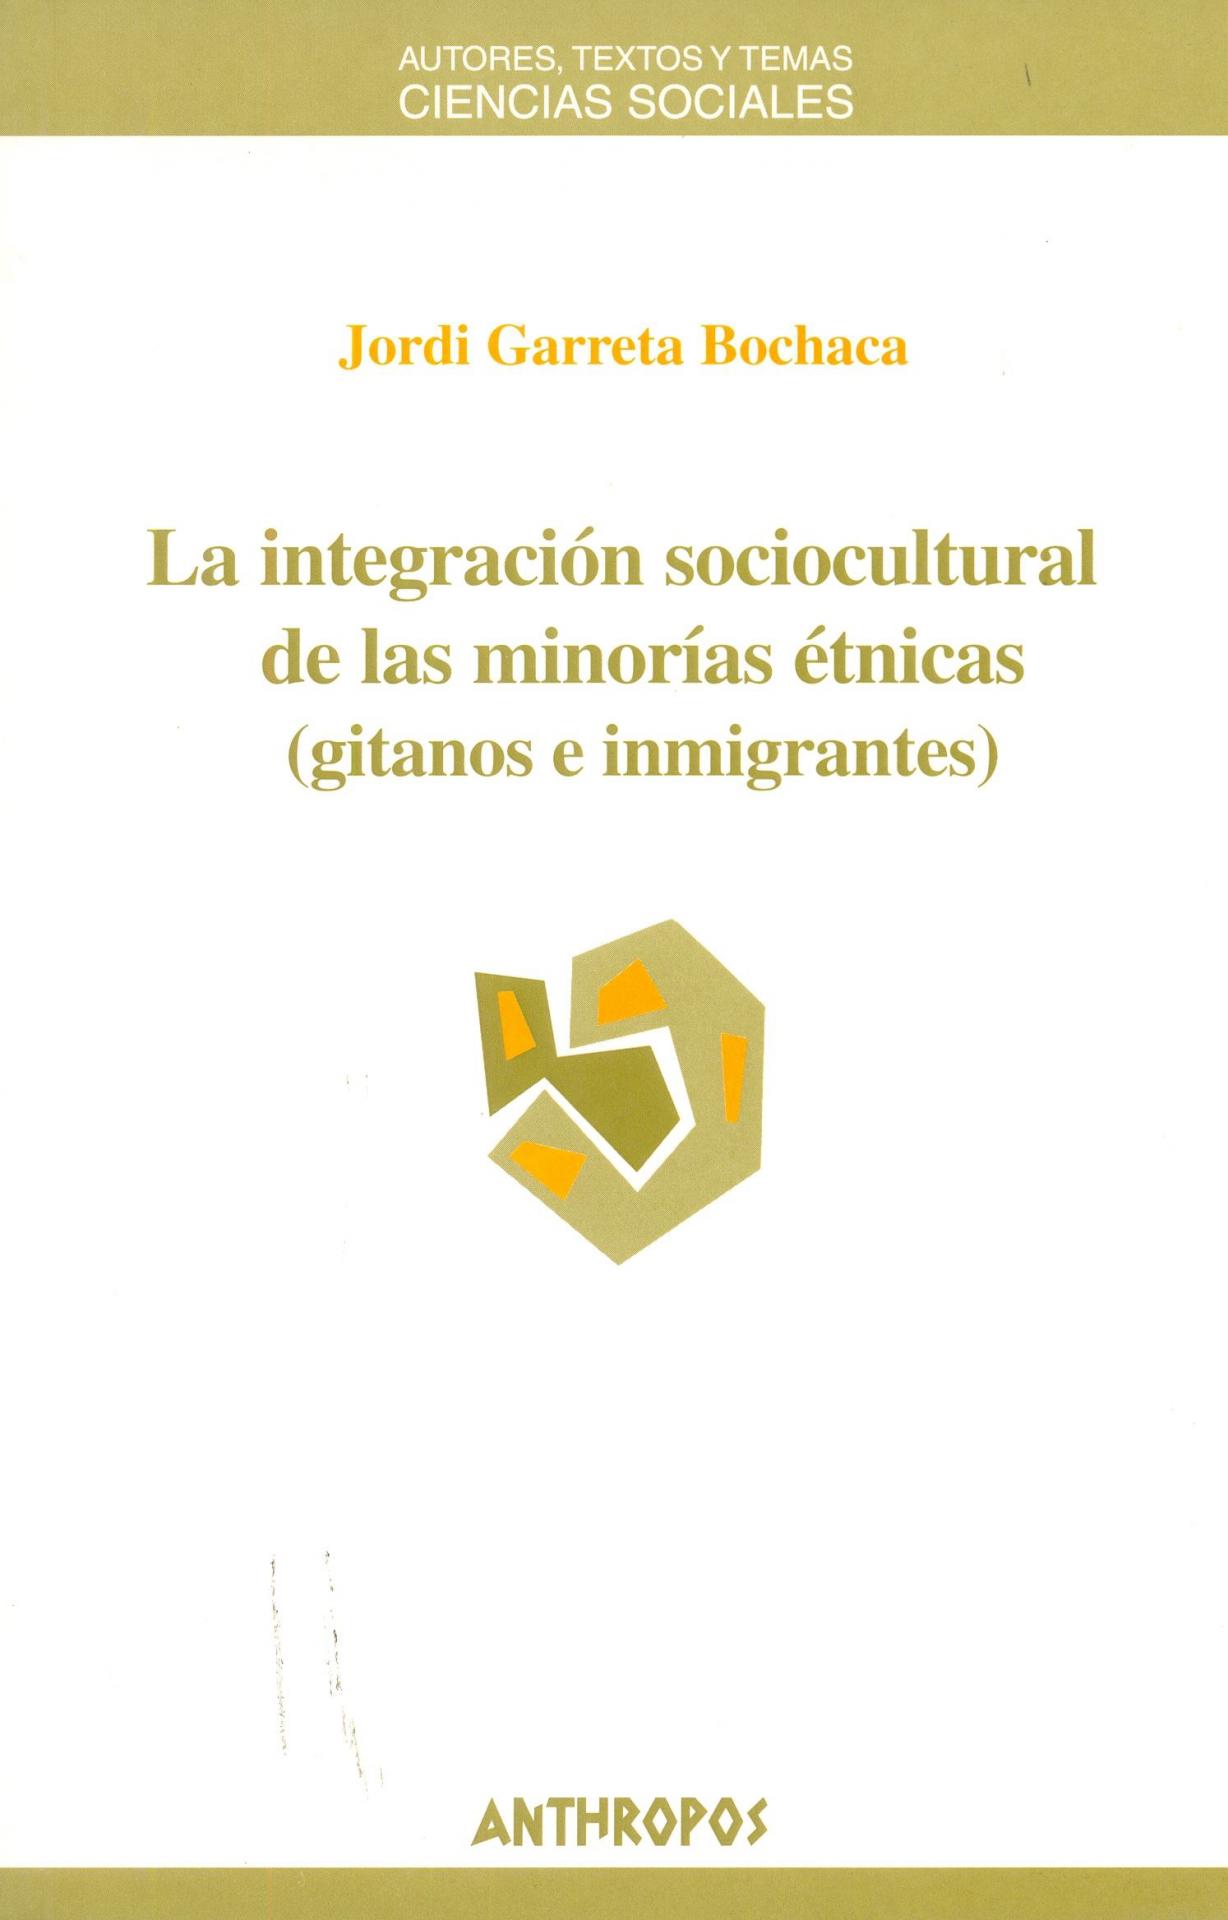 LA INTEGRACIÓN SOCIOCULTURAL DE LAS MINORÍAS ÉTNICAS (GITANOS E INMIGRANTES). Garreta, J.